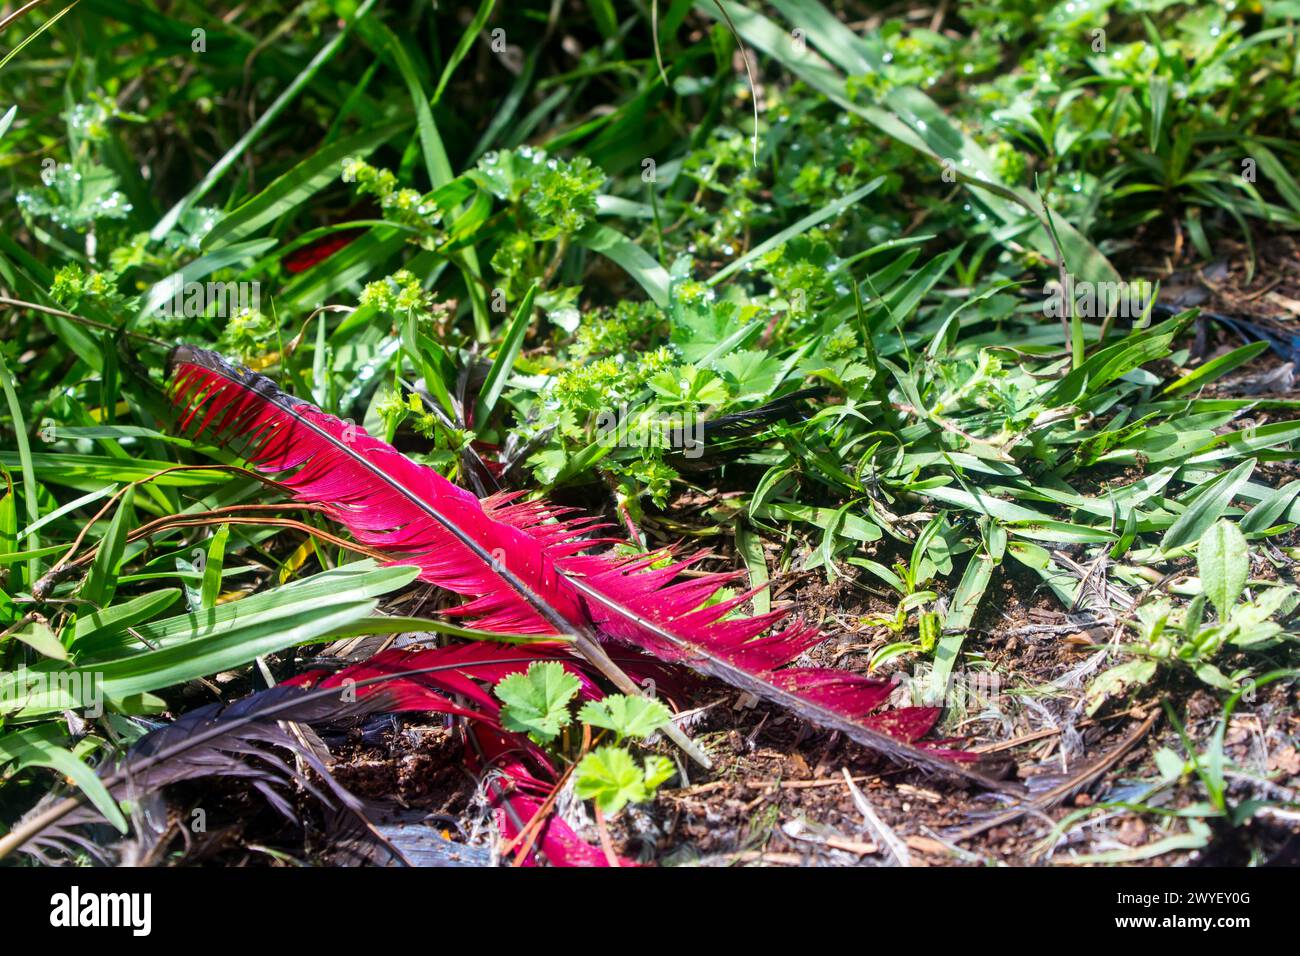 Le piume rosse di volo di un lourie, noto anche come Turaco, sparse tra l'erba verde brillante. Foto Stock